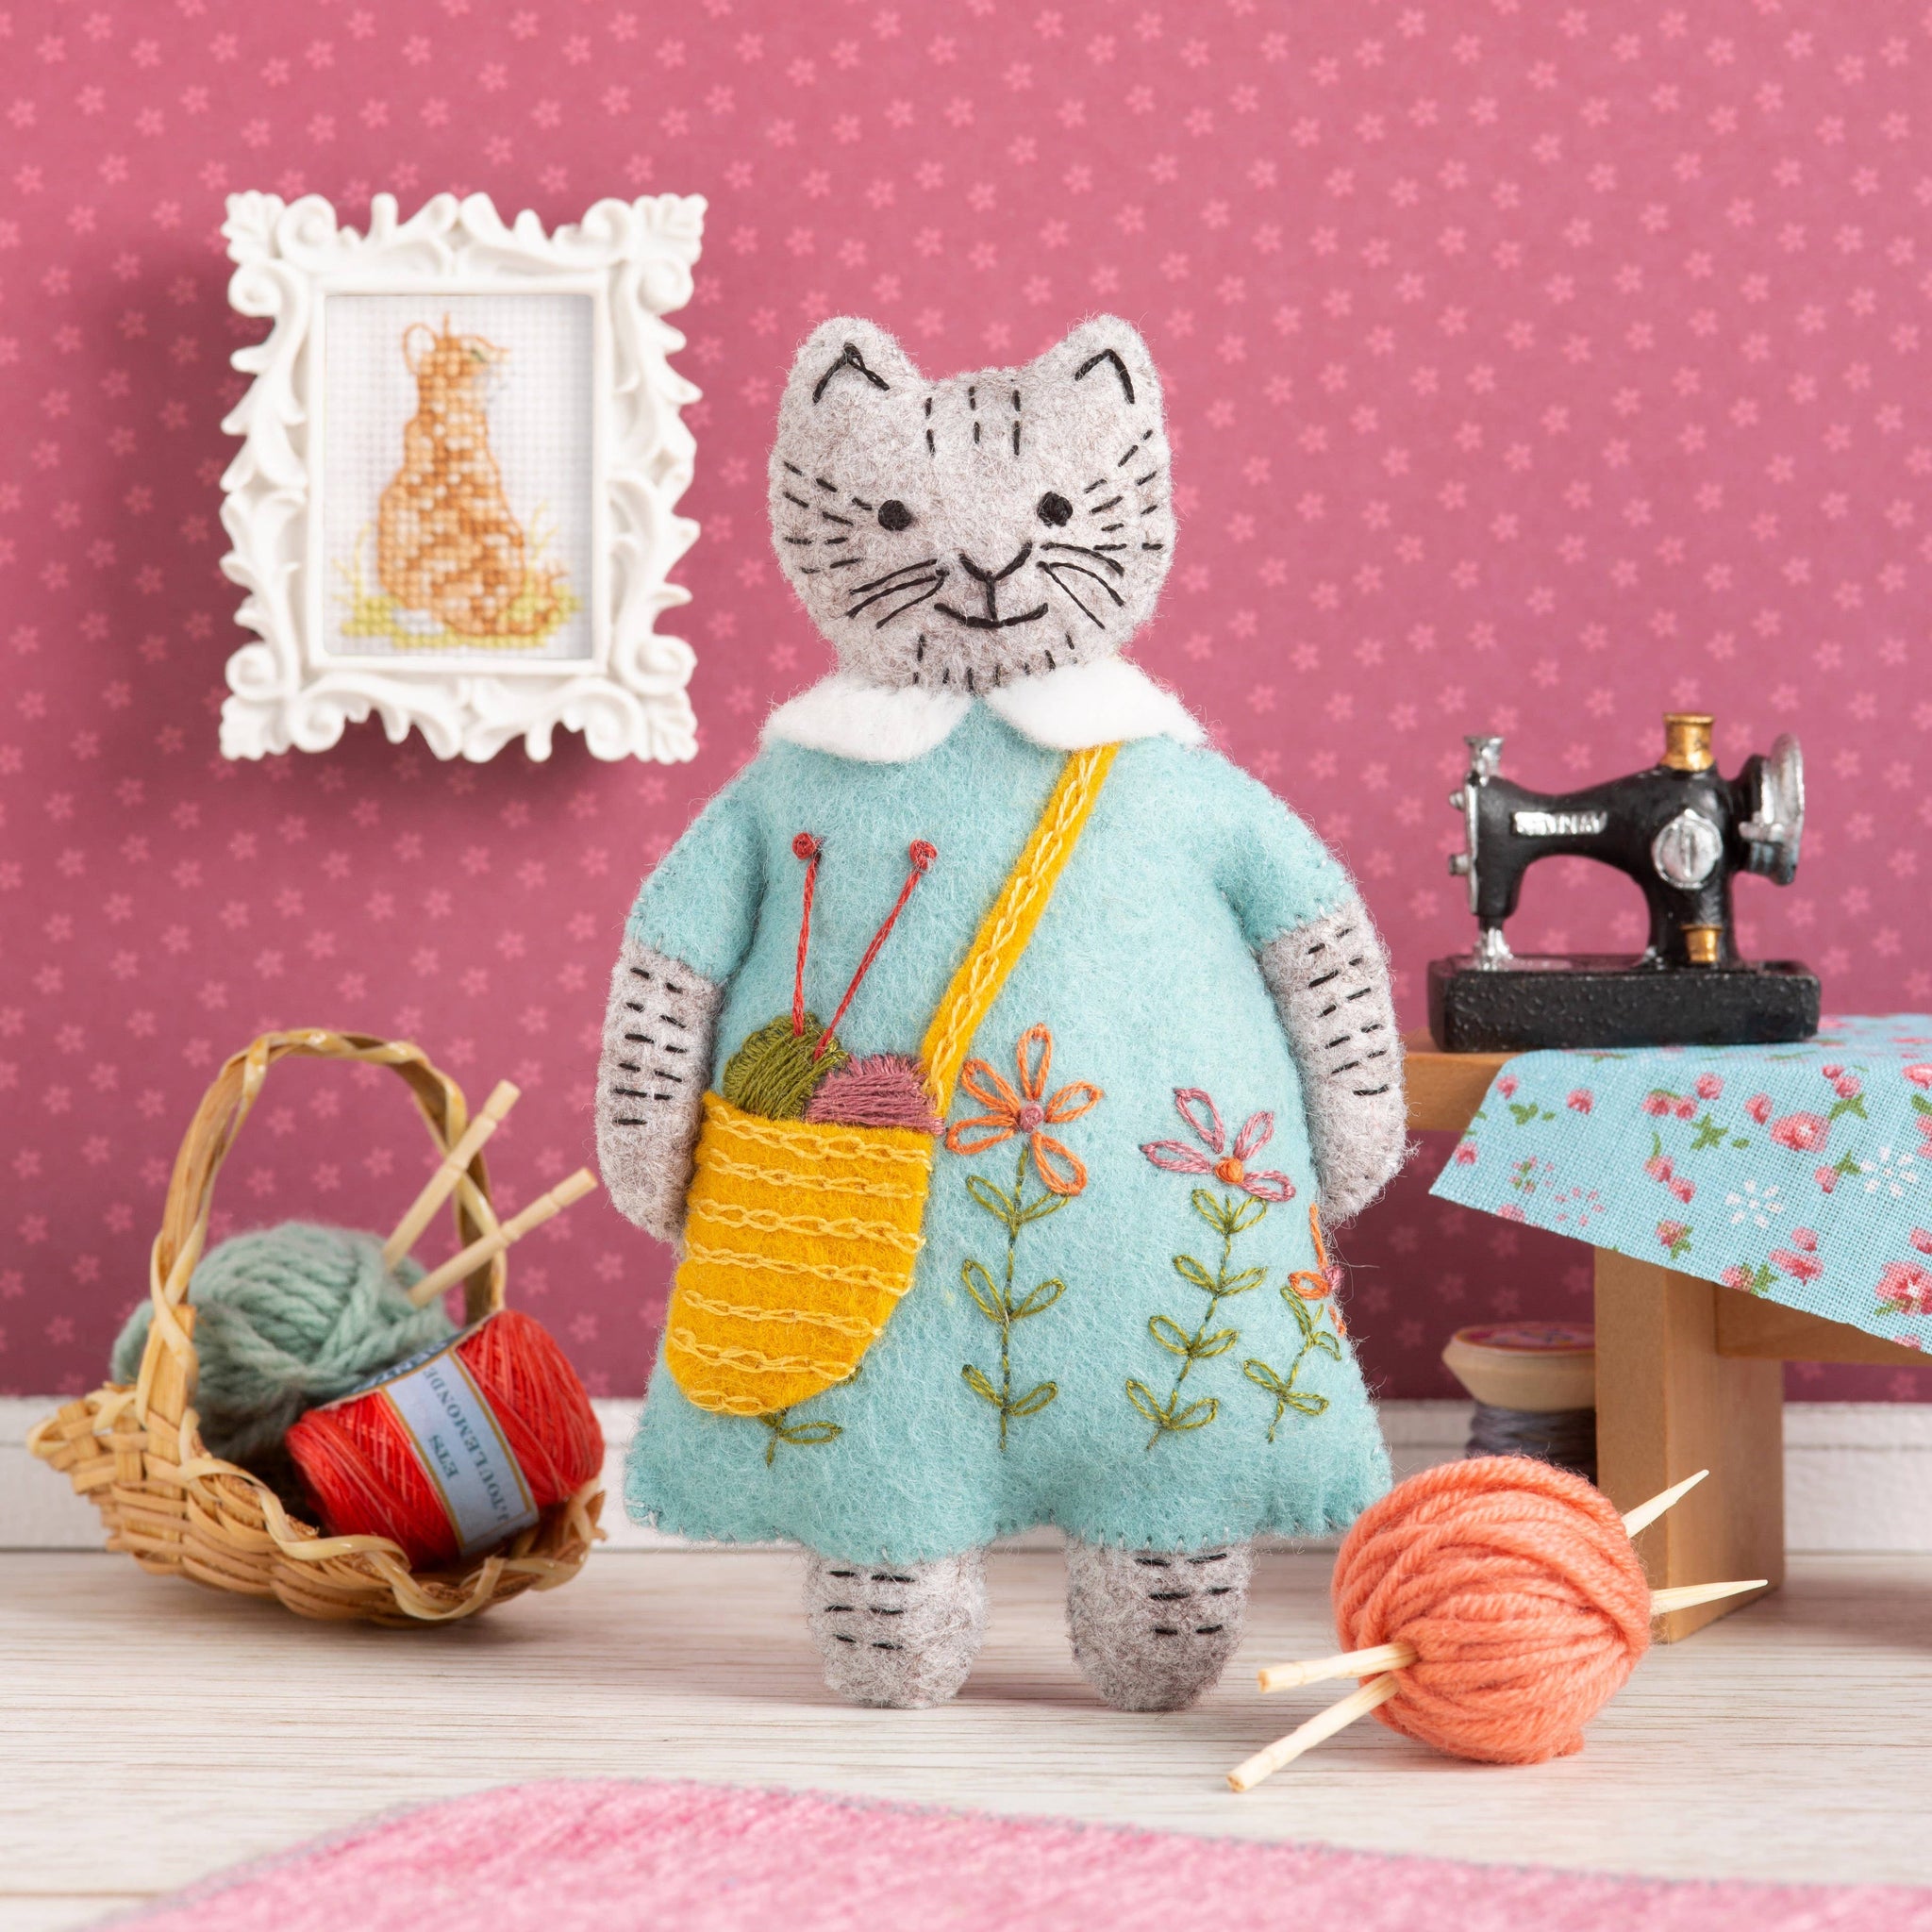 Mrs. Cat Loves Knitting Felt Craft Mini Kit